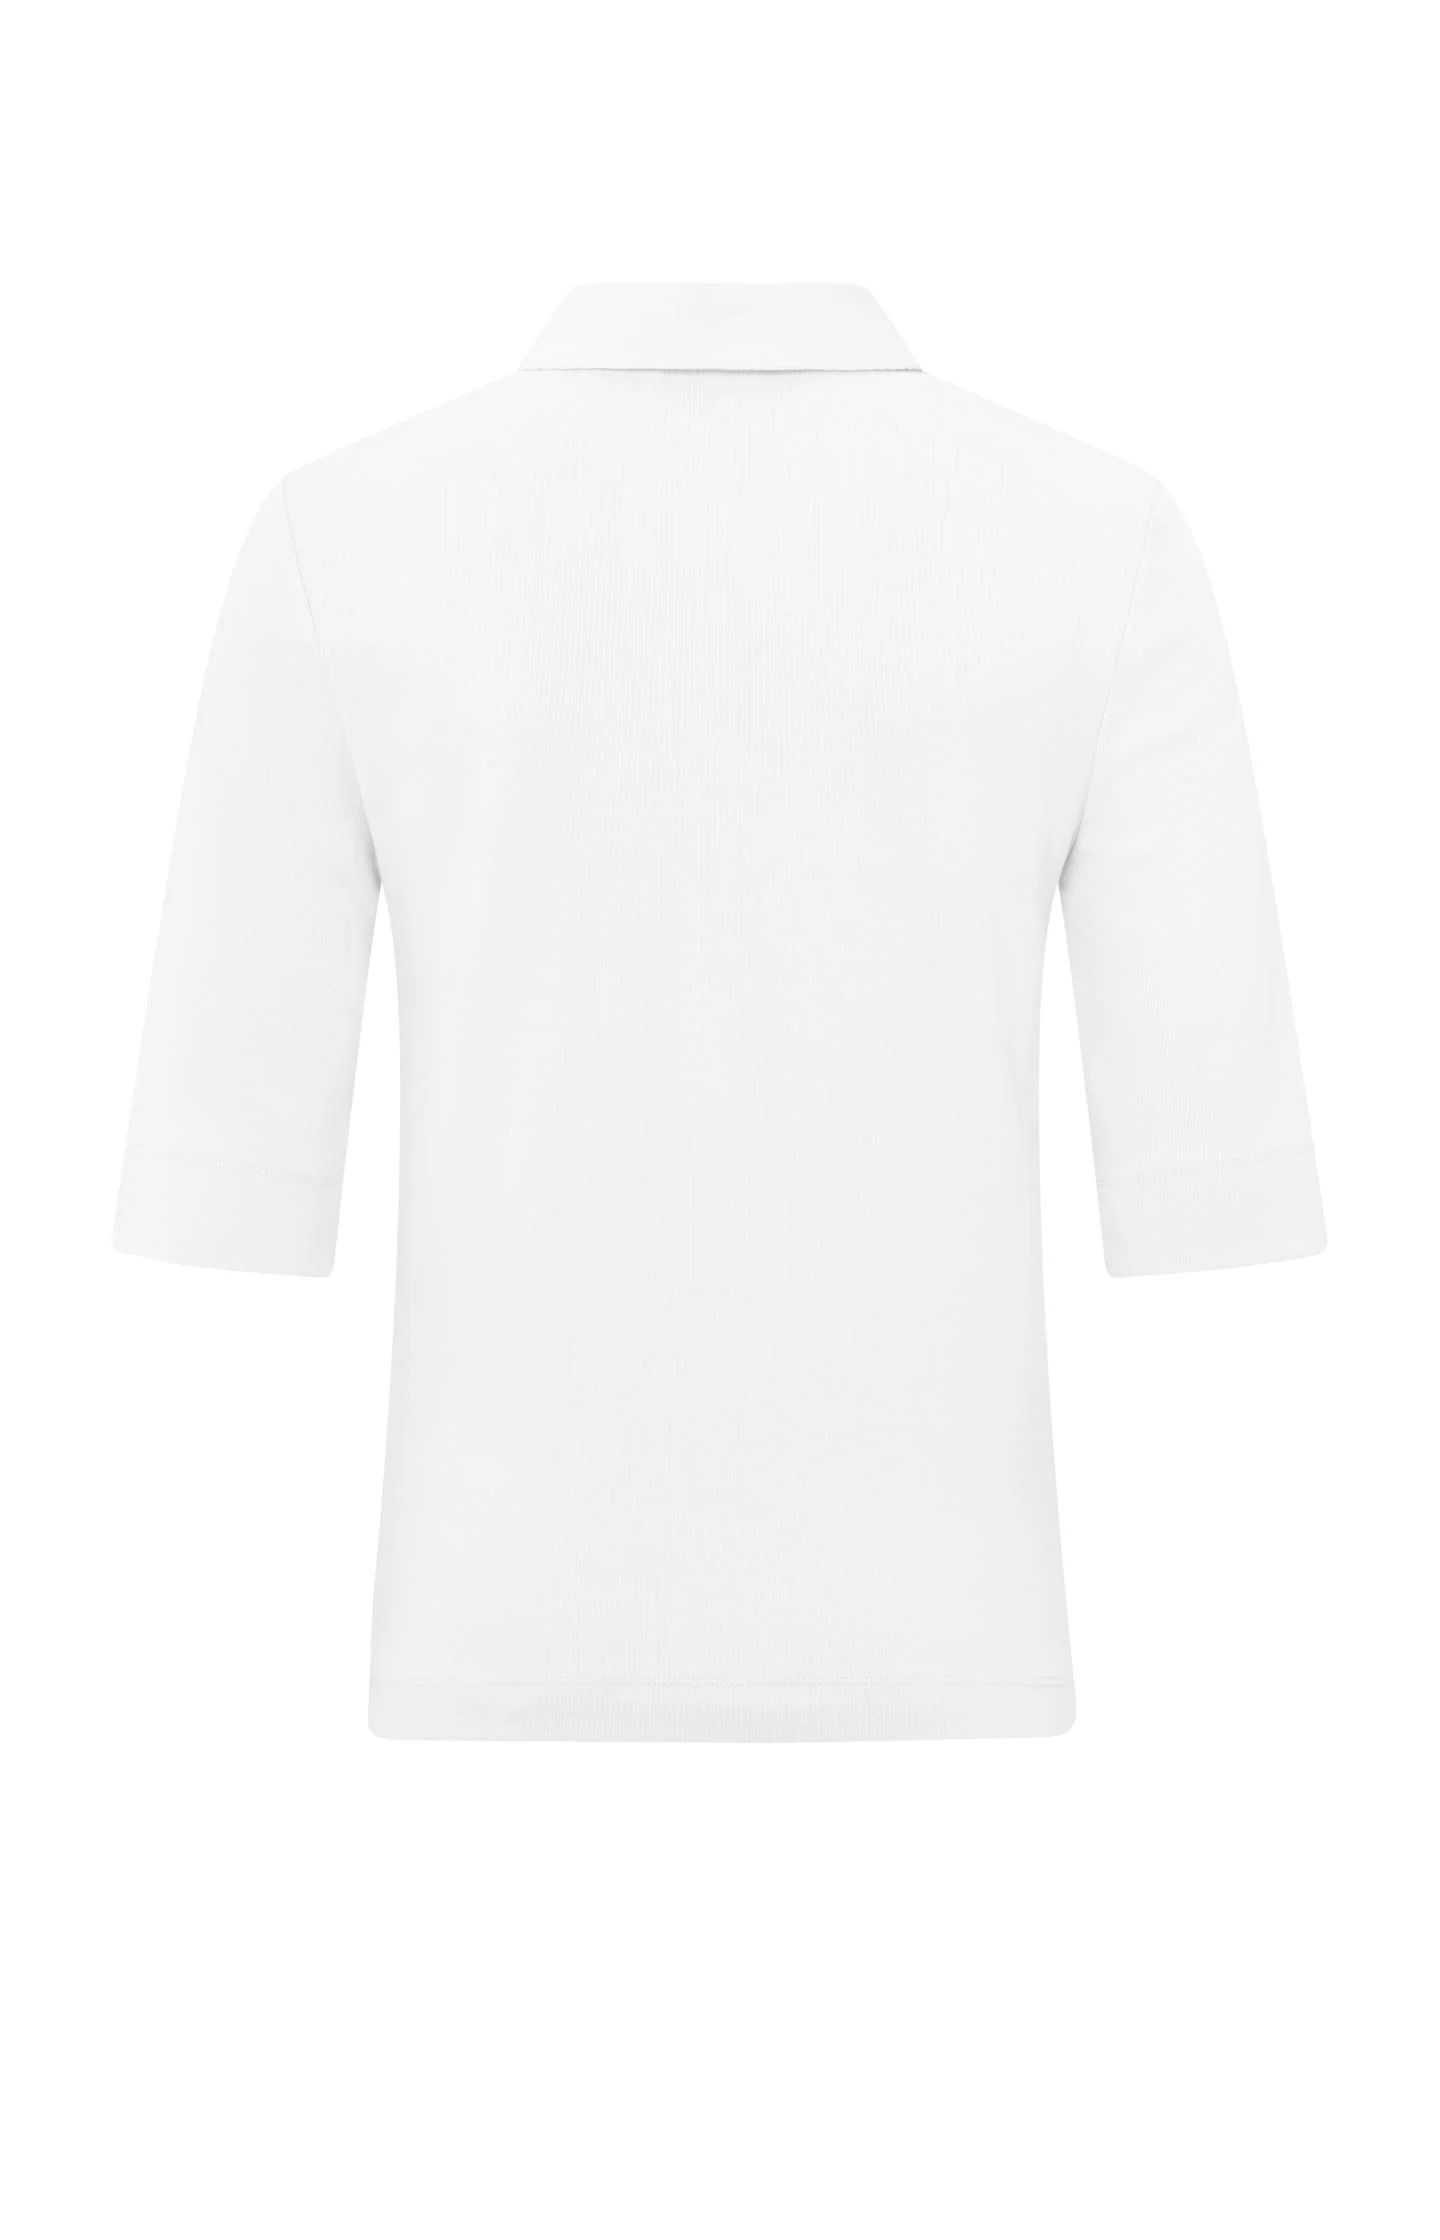 Yaya Fine Rib Jersey Polo - Pure White Clothing - Tops - Shirts - SS Knits by Yaya | Grace the Boutique